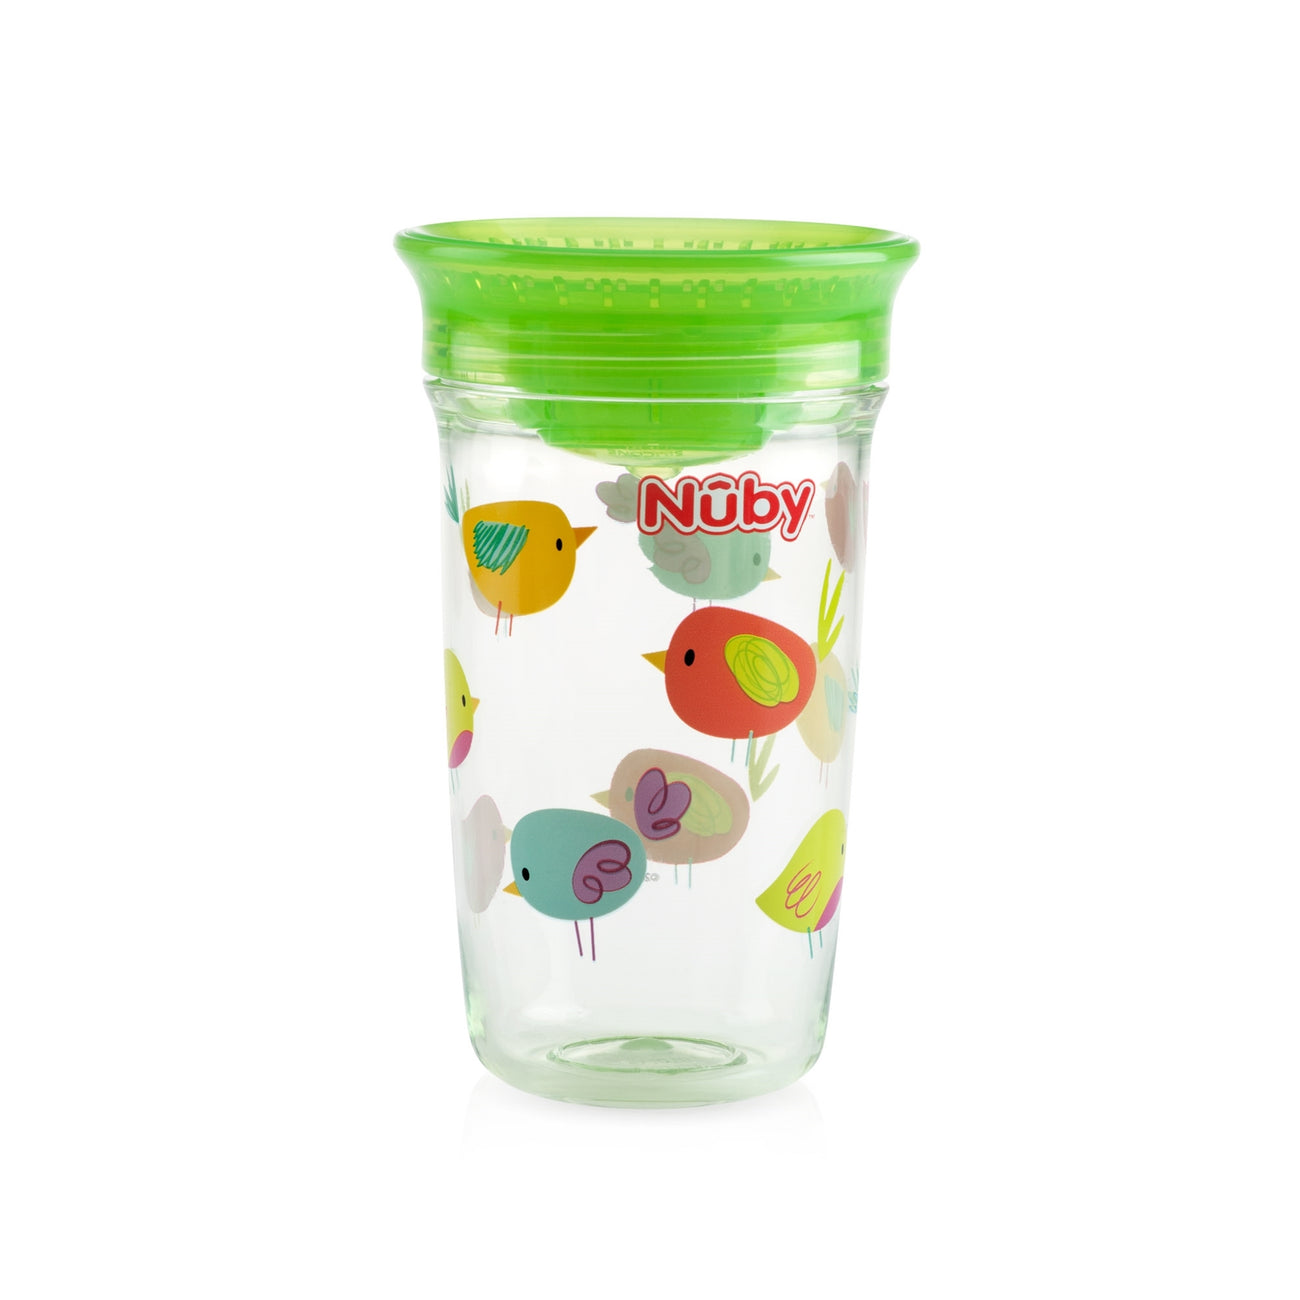 360 Wonder Cup - Nuby US